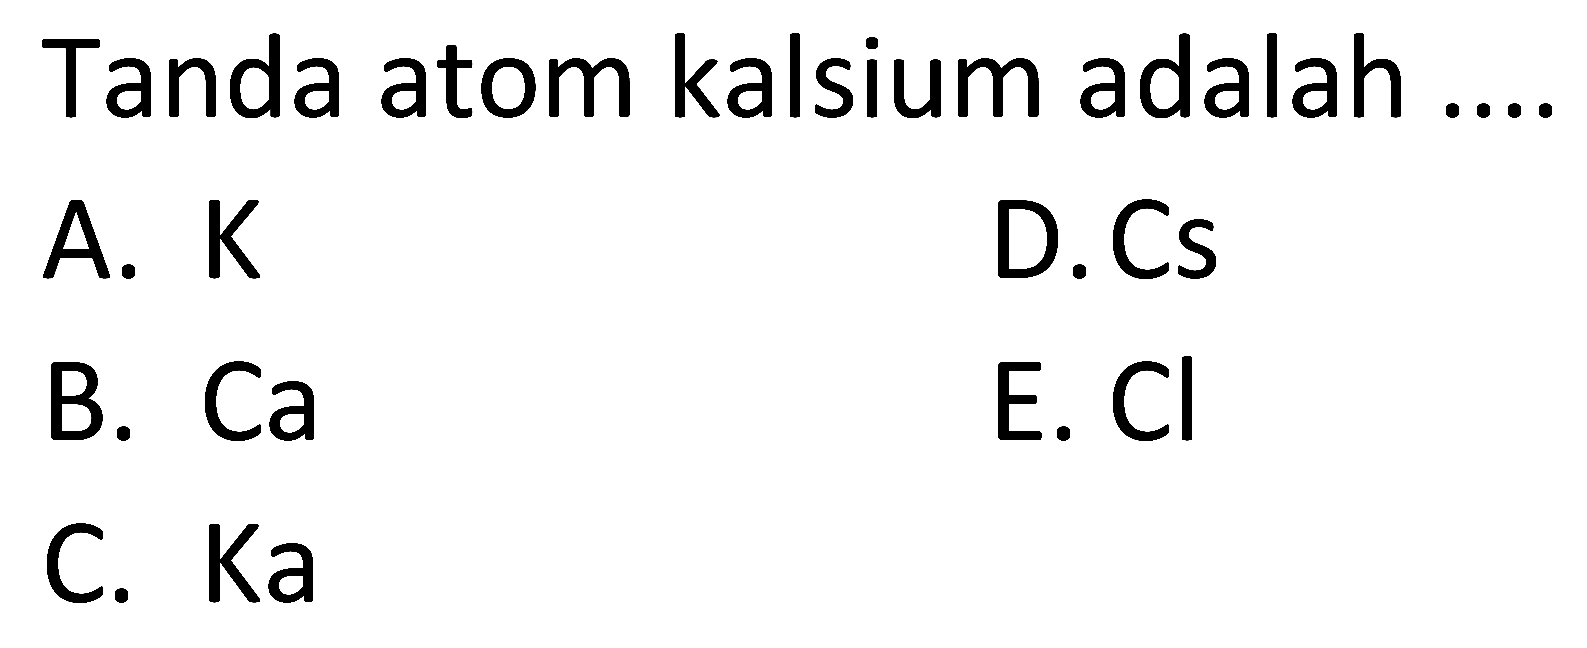 Tanda atom kalsium adalah ....
